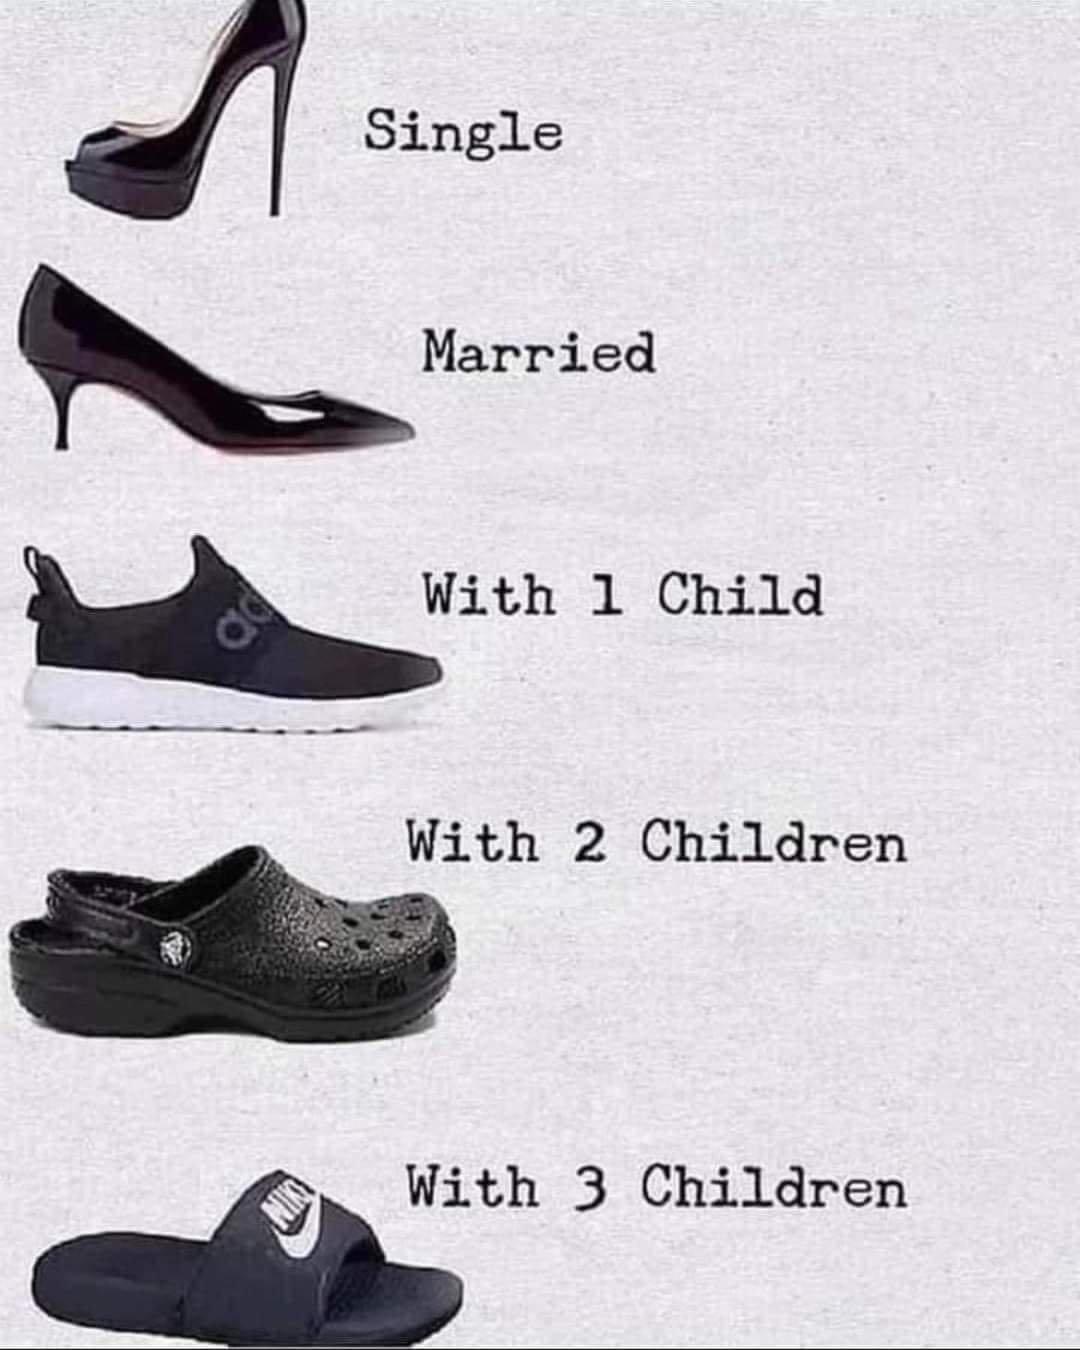 신발로 보는 결혼 여부